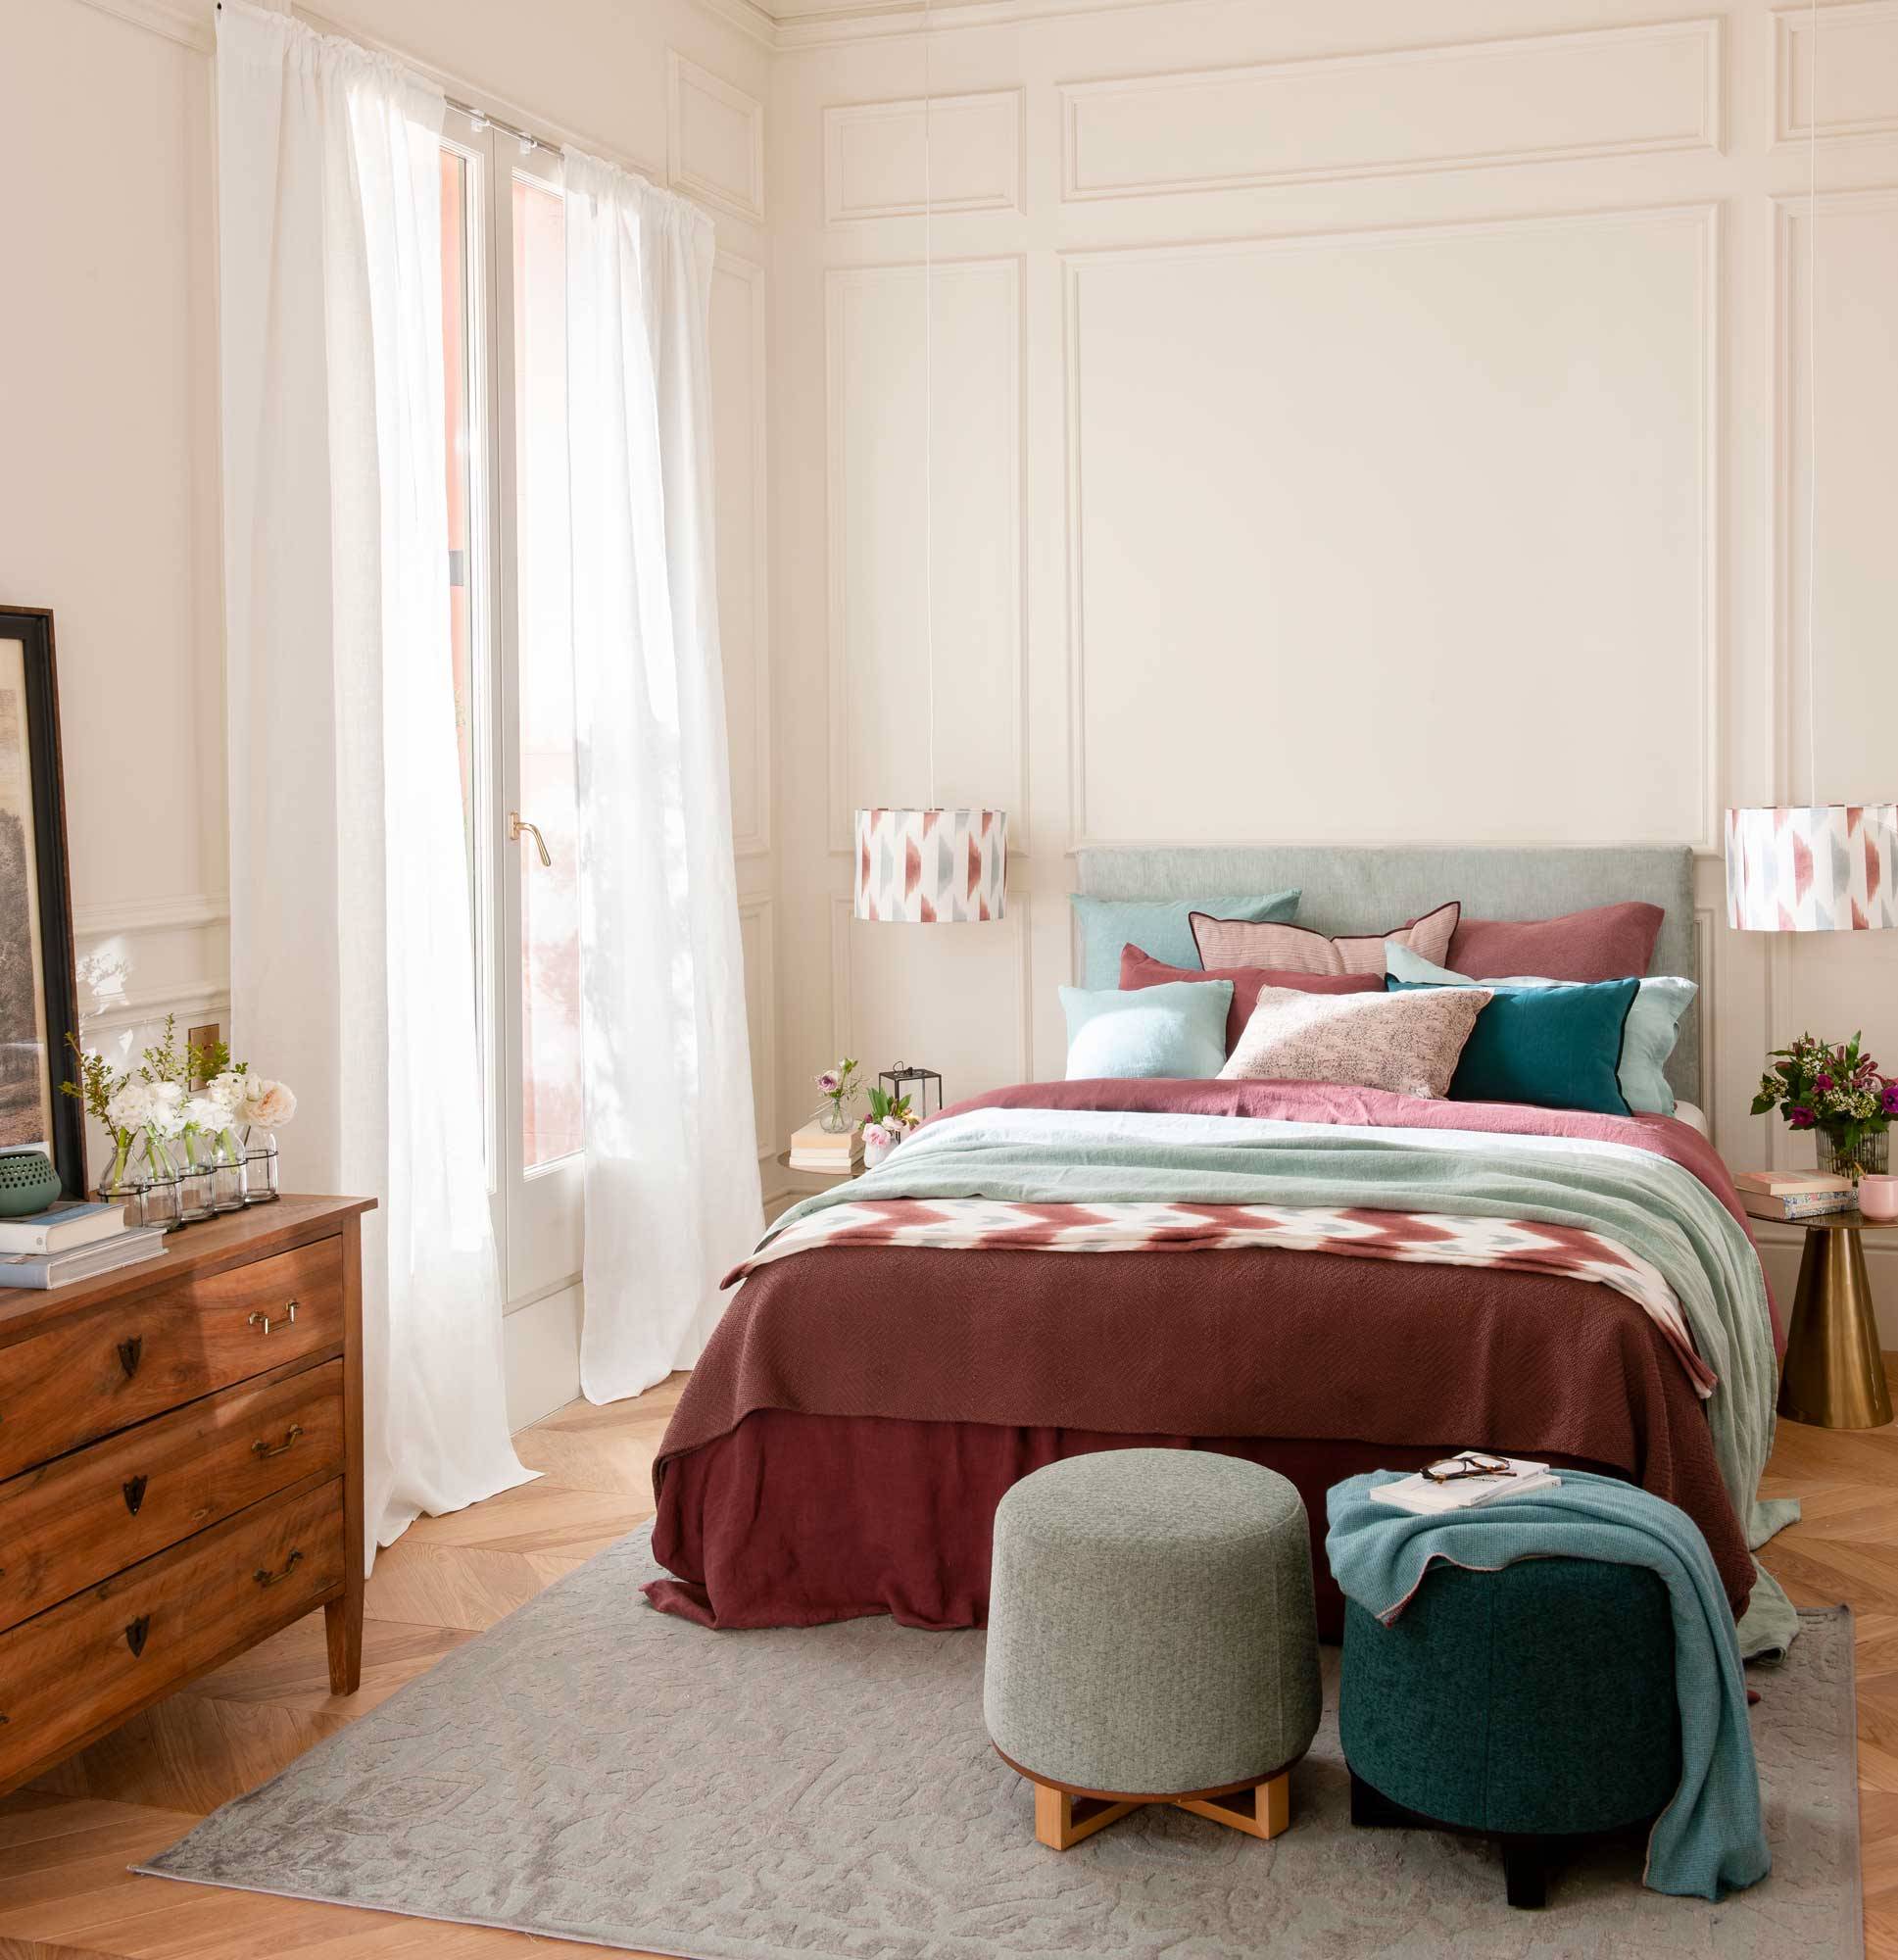 Un dormitorio estilo clásico con colores azul claro y rojo vino, con cabecero mullido. 